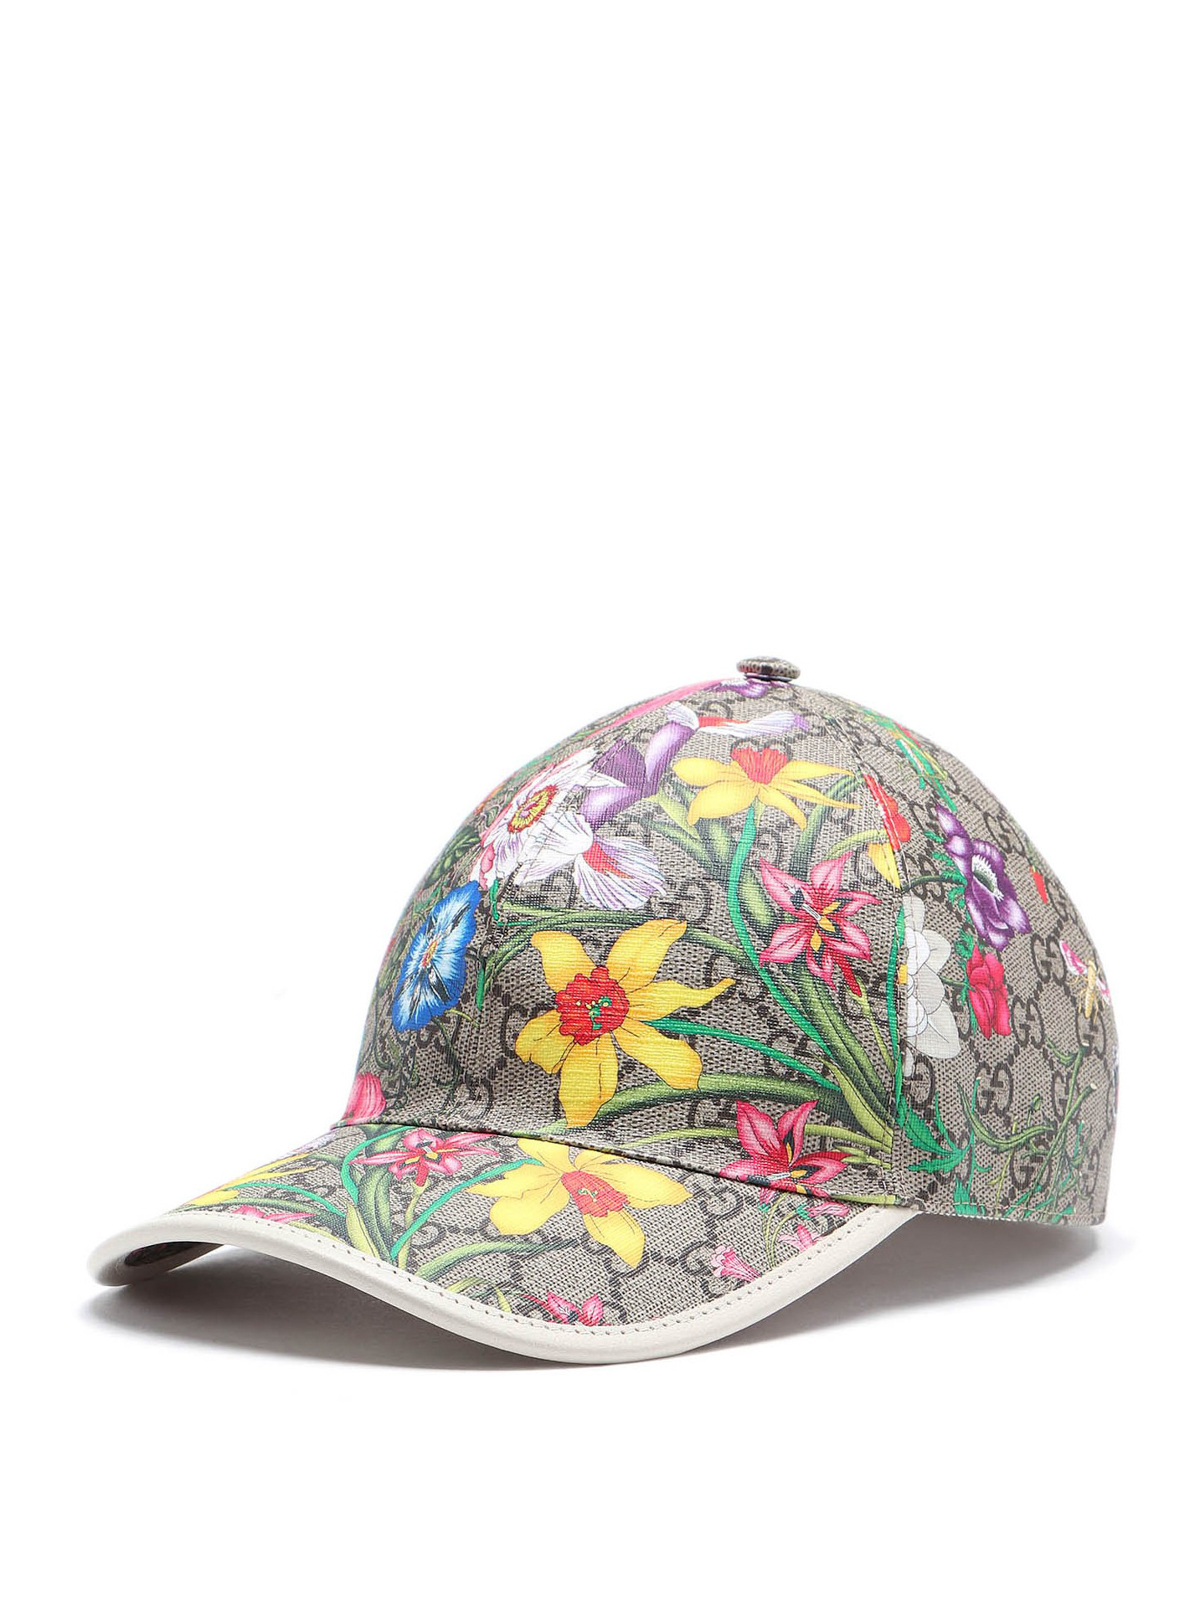 Hats & caps Gucci - GG Flora baseball cap - 6039864HI898477 